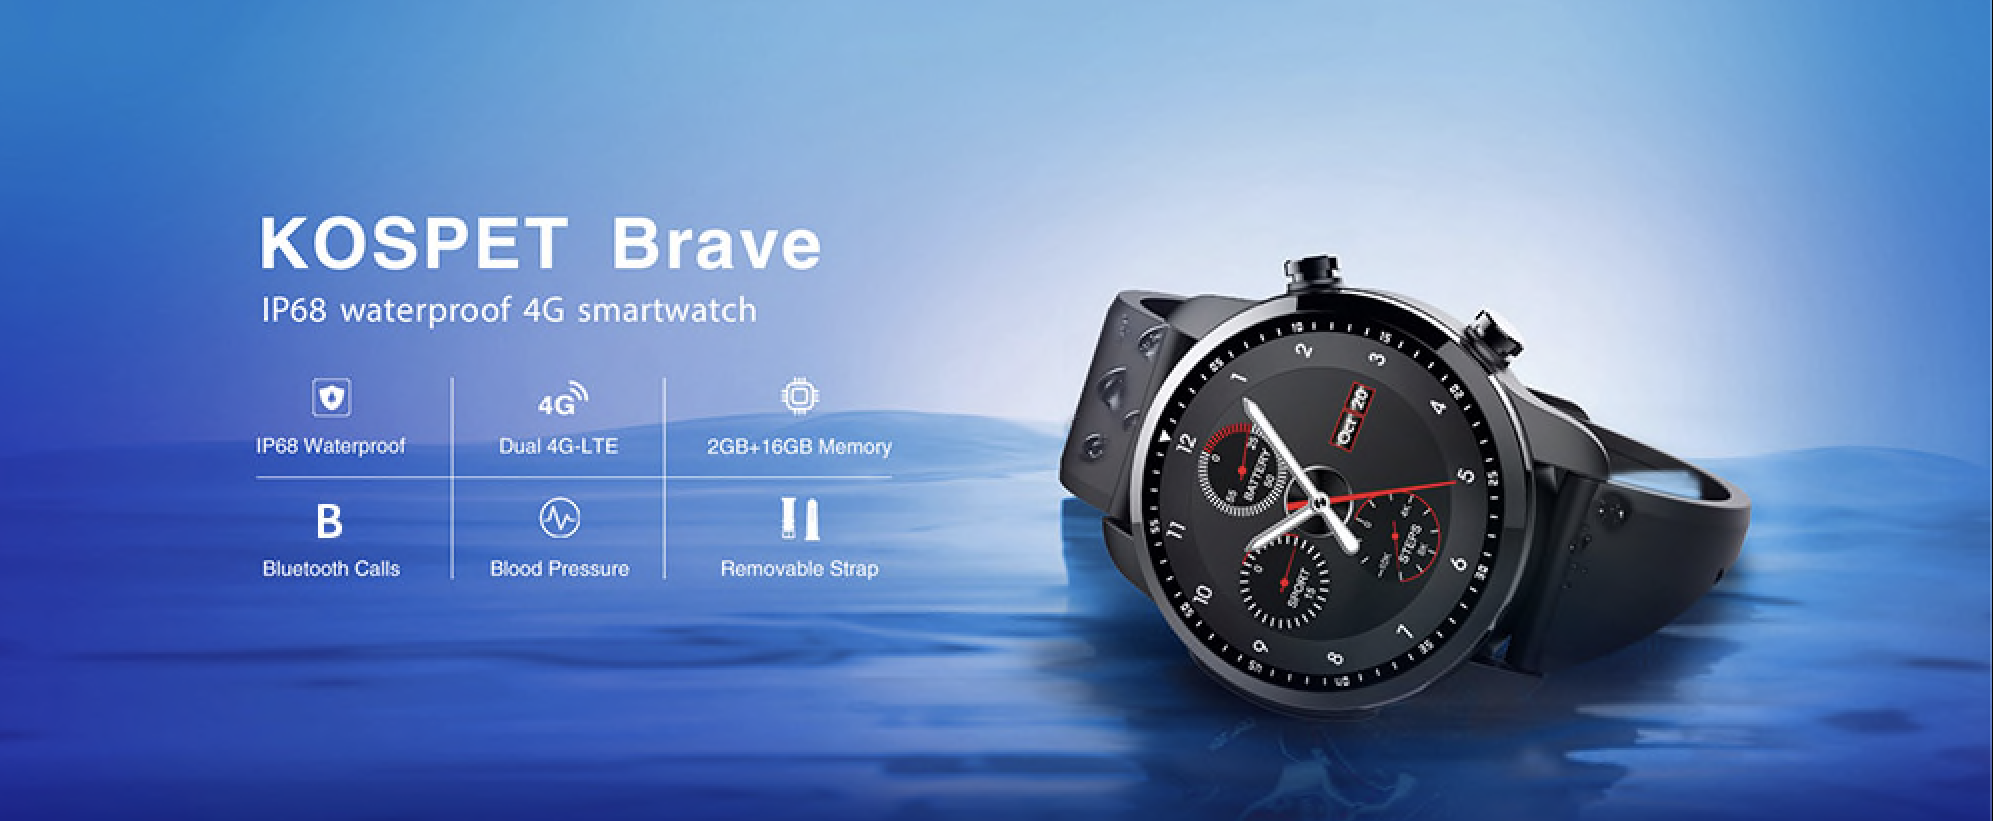 Kospet Brave 4G Smartwatch